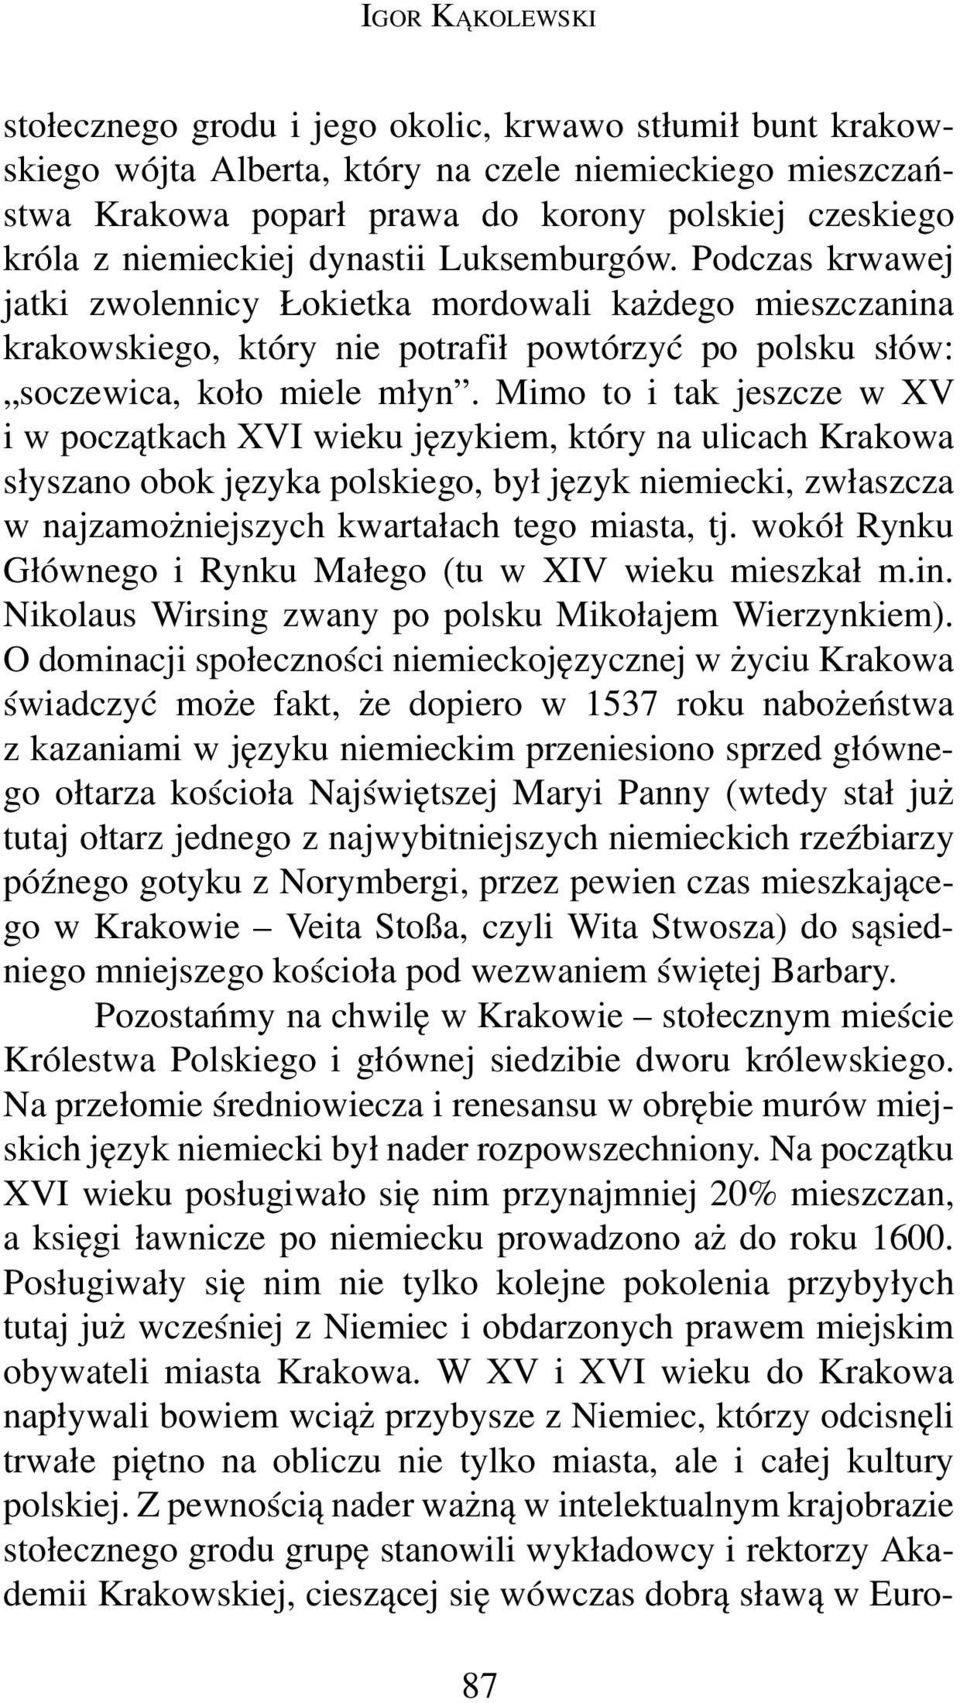 Mimo to i tak jeszcze w XV i w początkach XVI wieku językiem, który na ulicach Krakowa słyszano obok języka polskiego, był język niemiecki, zwłaszcza w najzamożniejszych kwartałach tego miasta, tj.